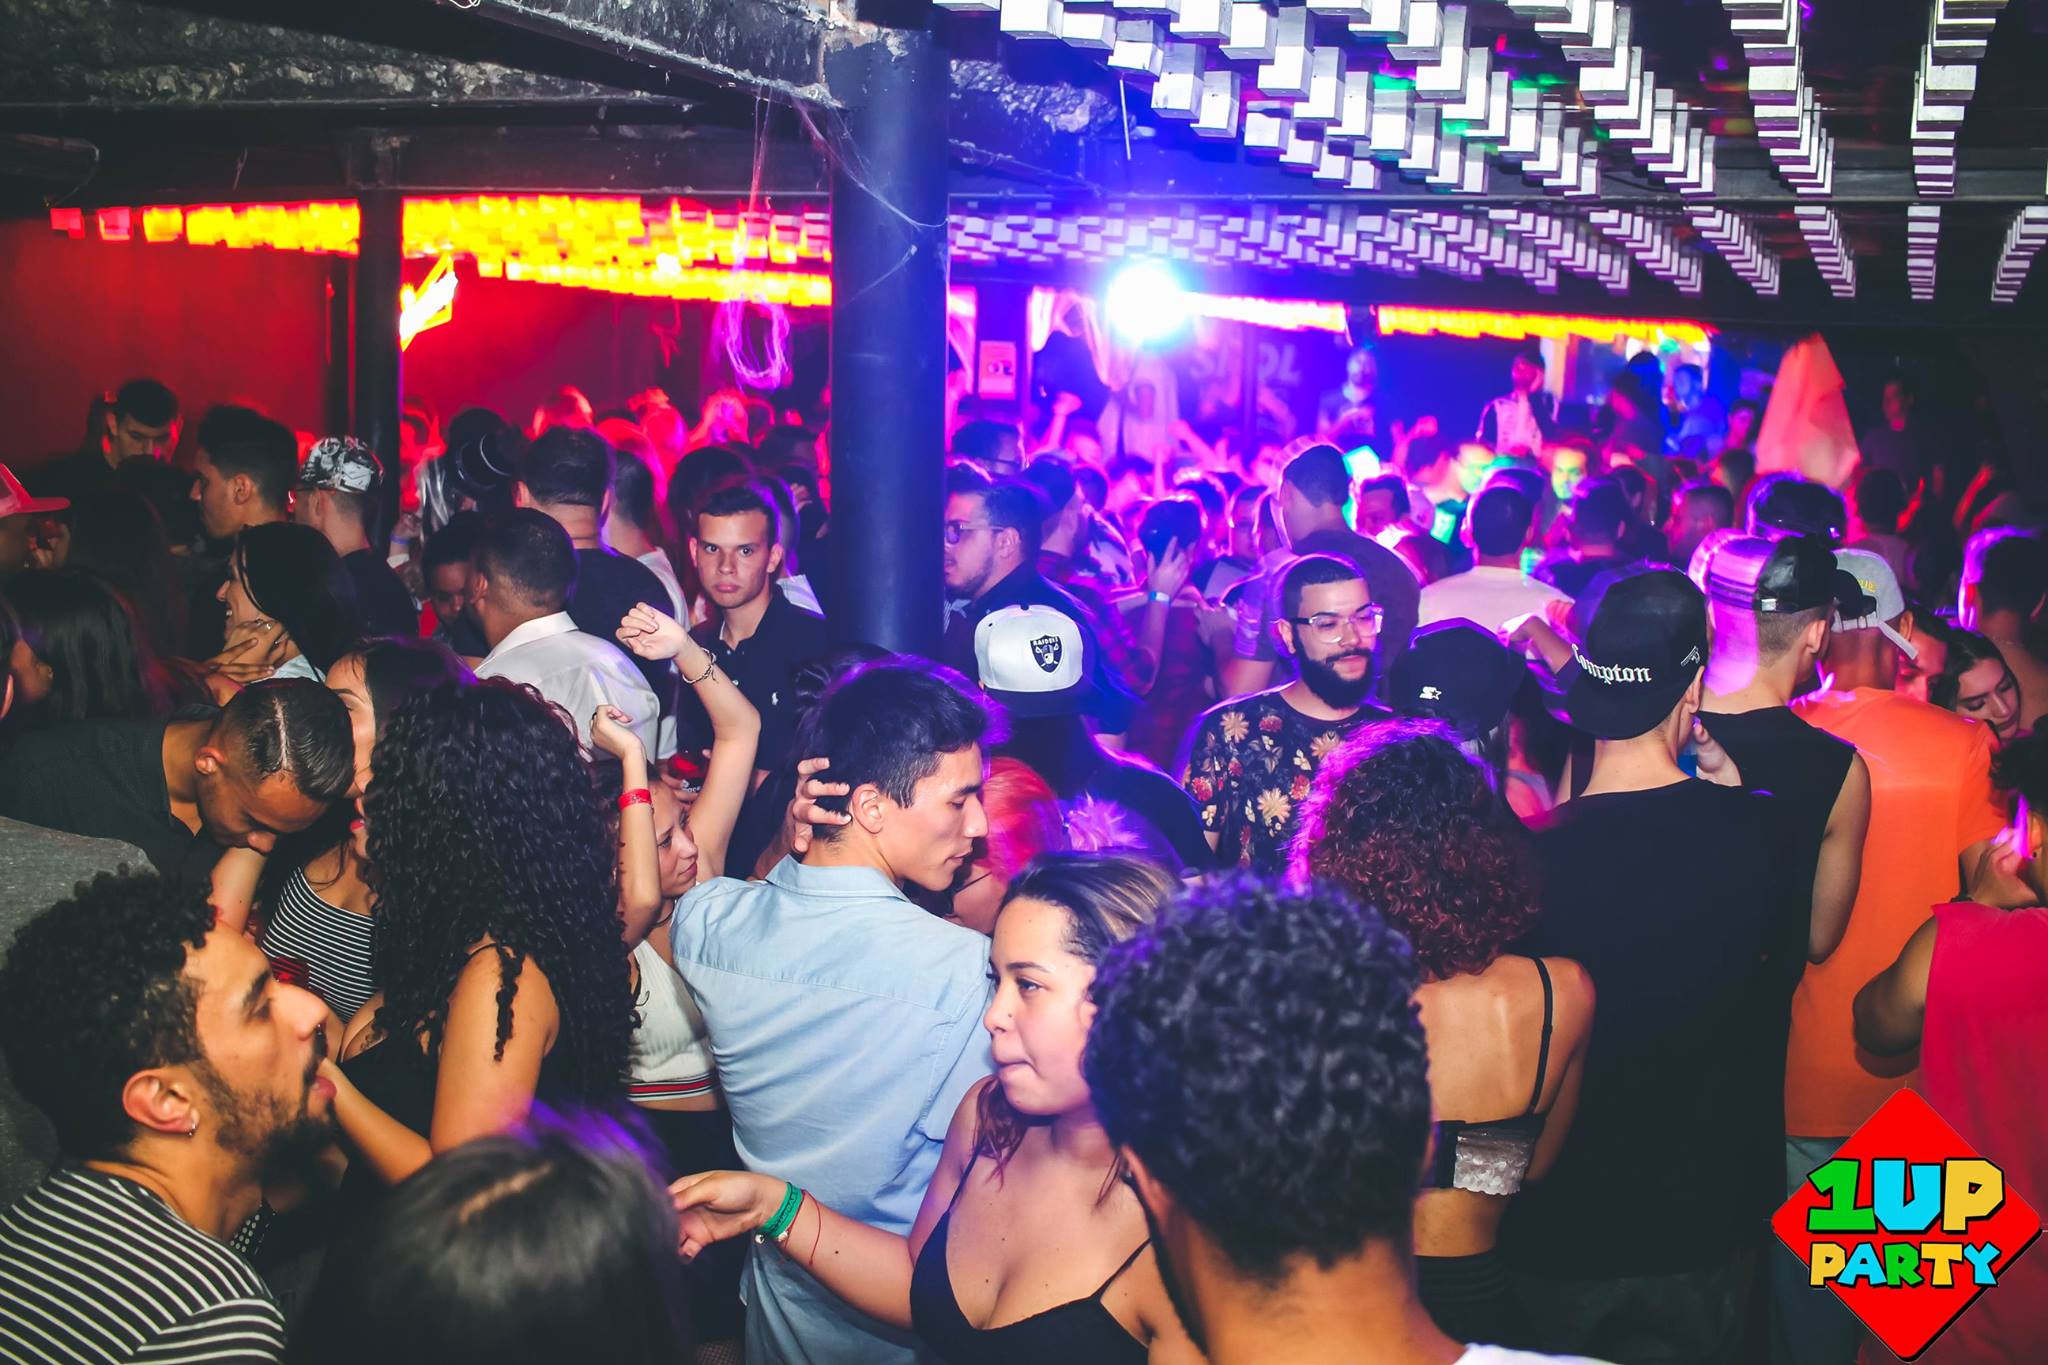 Festa 1Up Party Open Bar comemora um ano no Terraço Club - festas gays em São Paulo